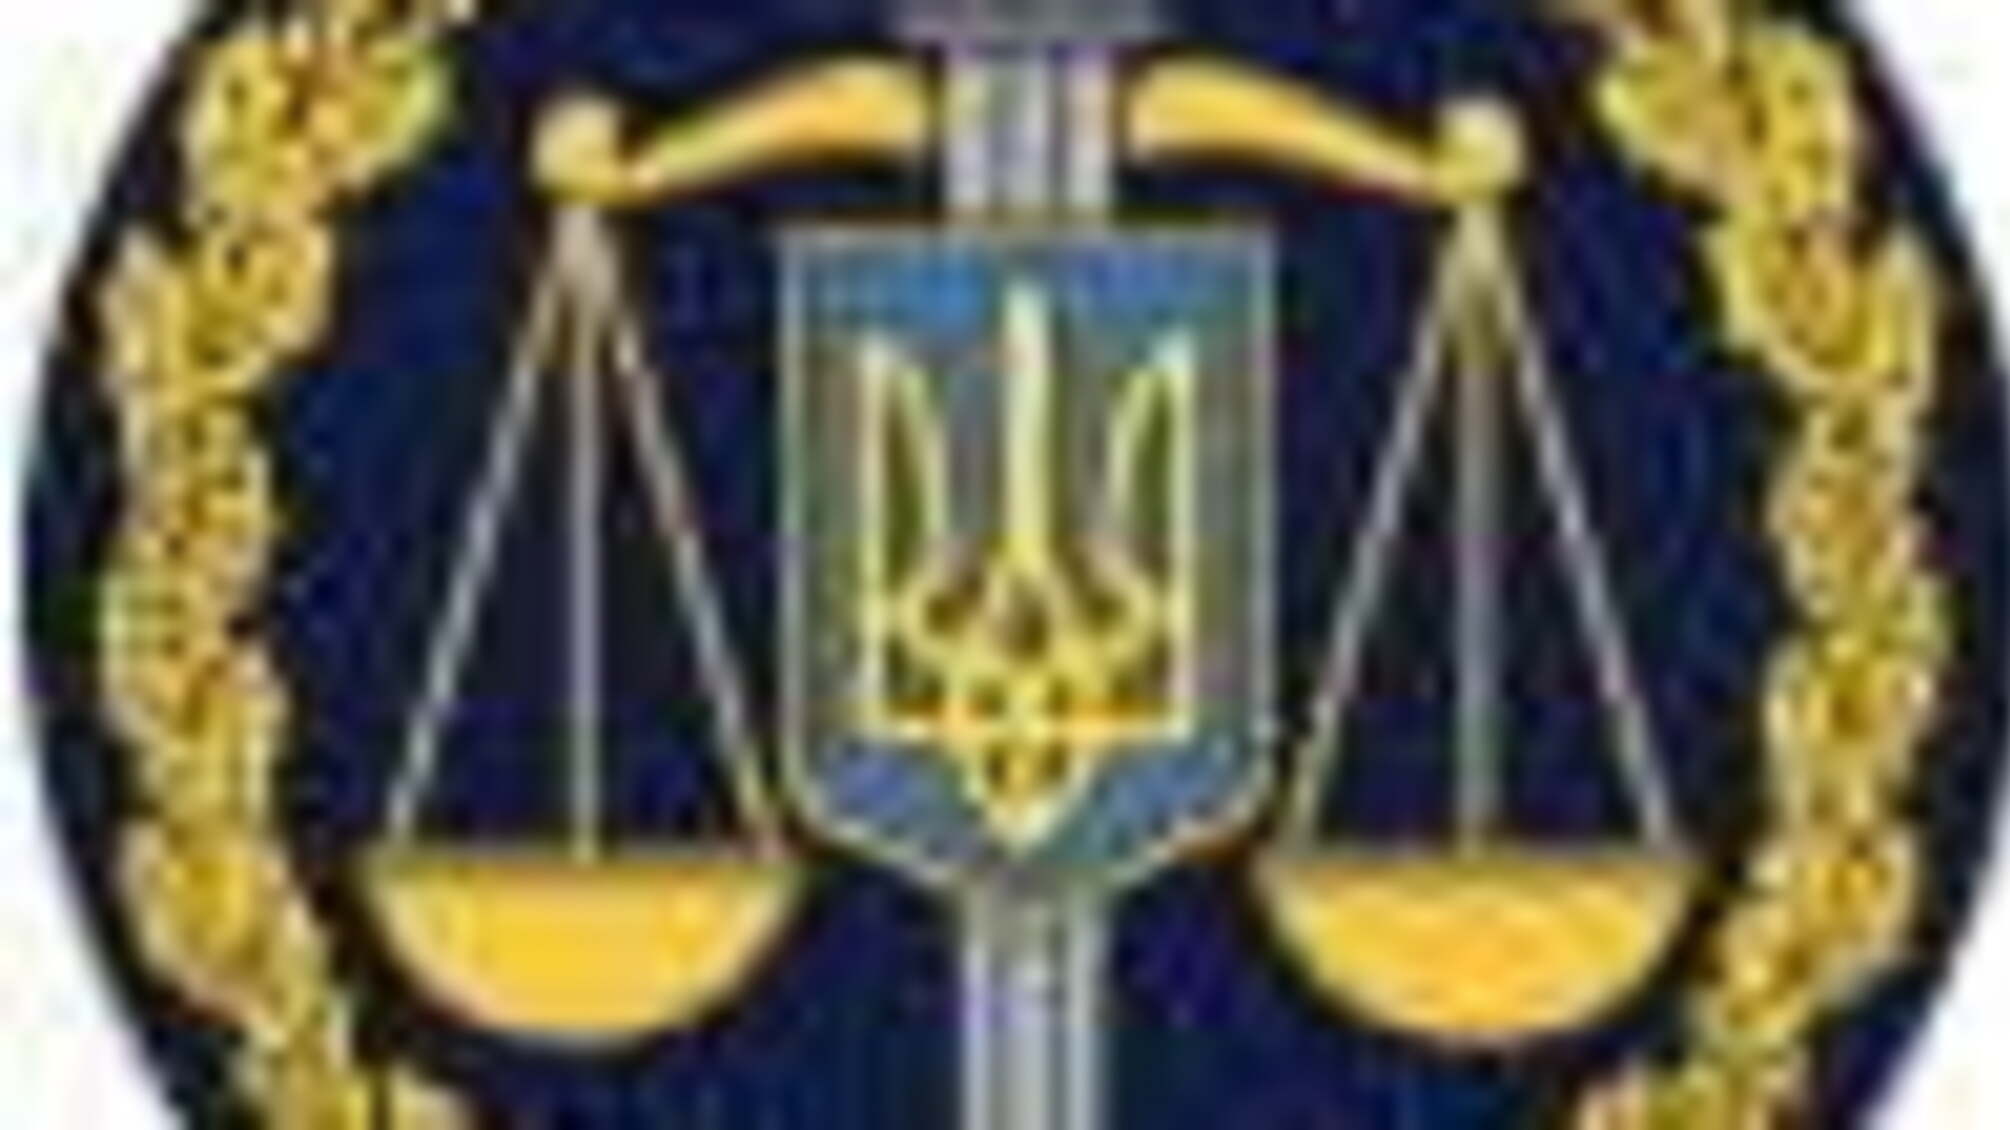 Керівником окружної прокуратури проведено прийом засуджених у  Диканівській та Качанівській виправних колоніях (ФОТО)